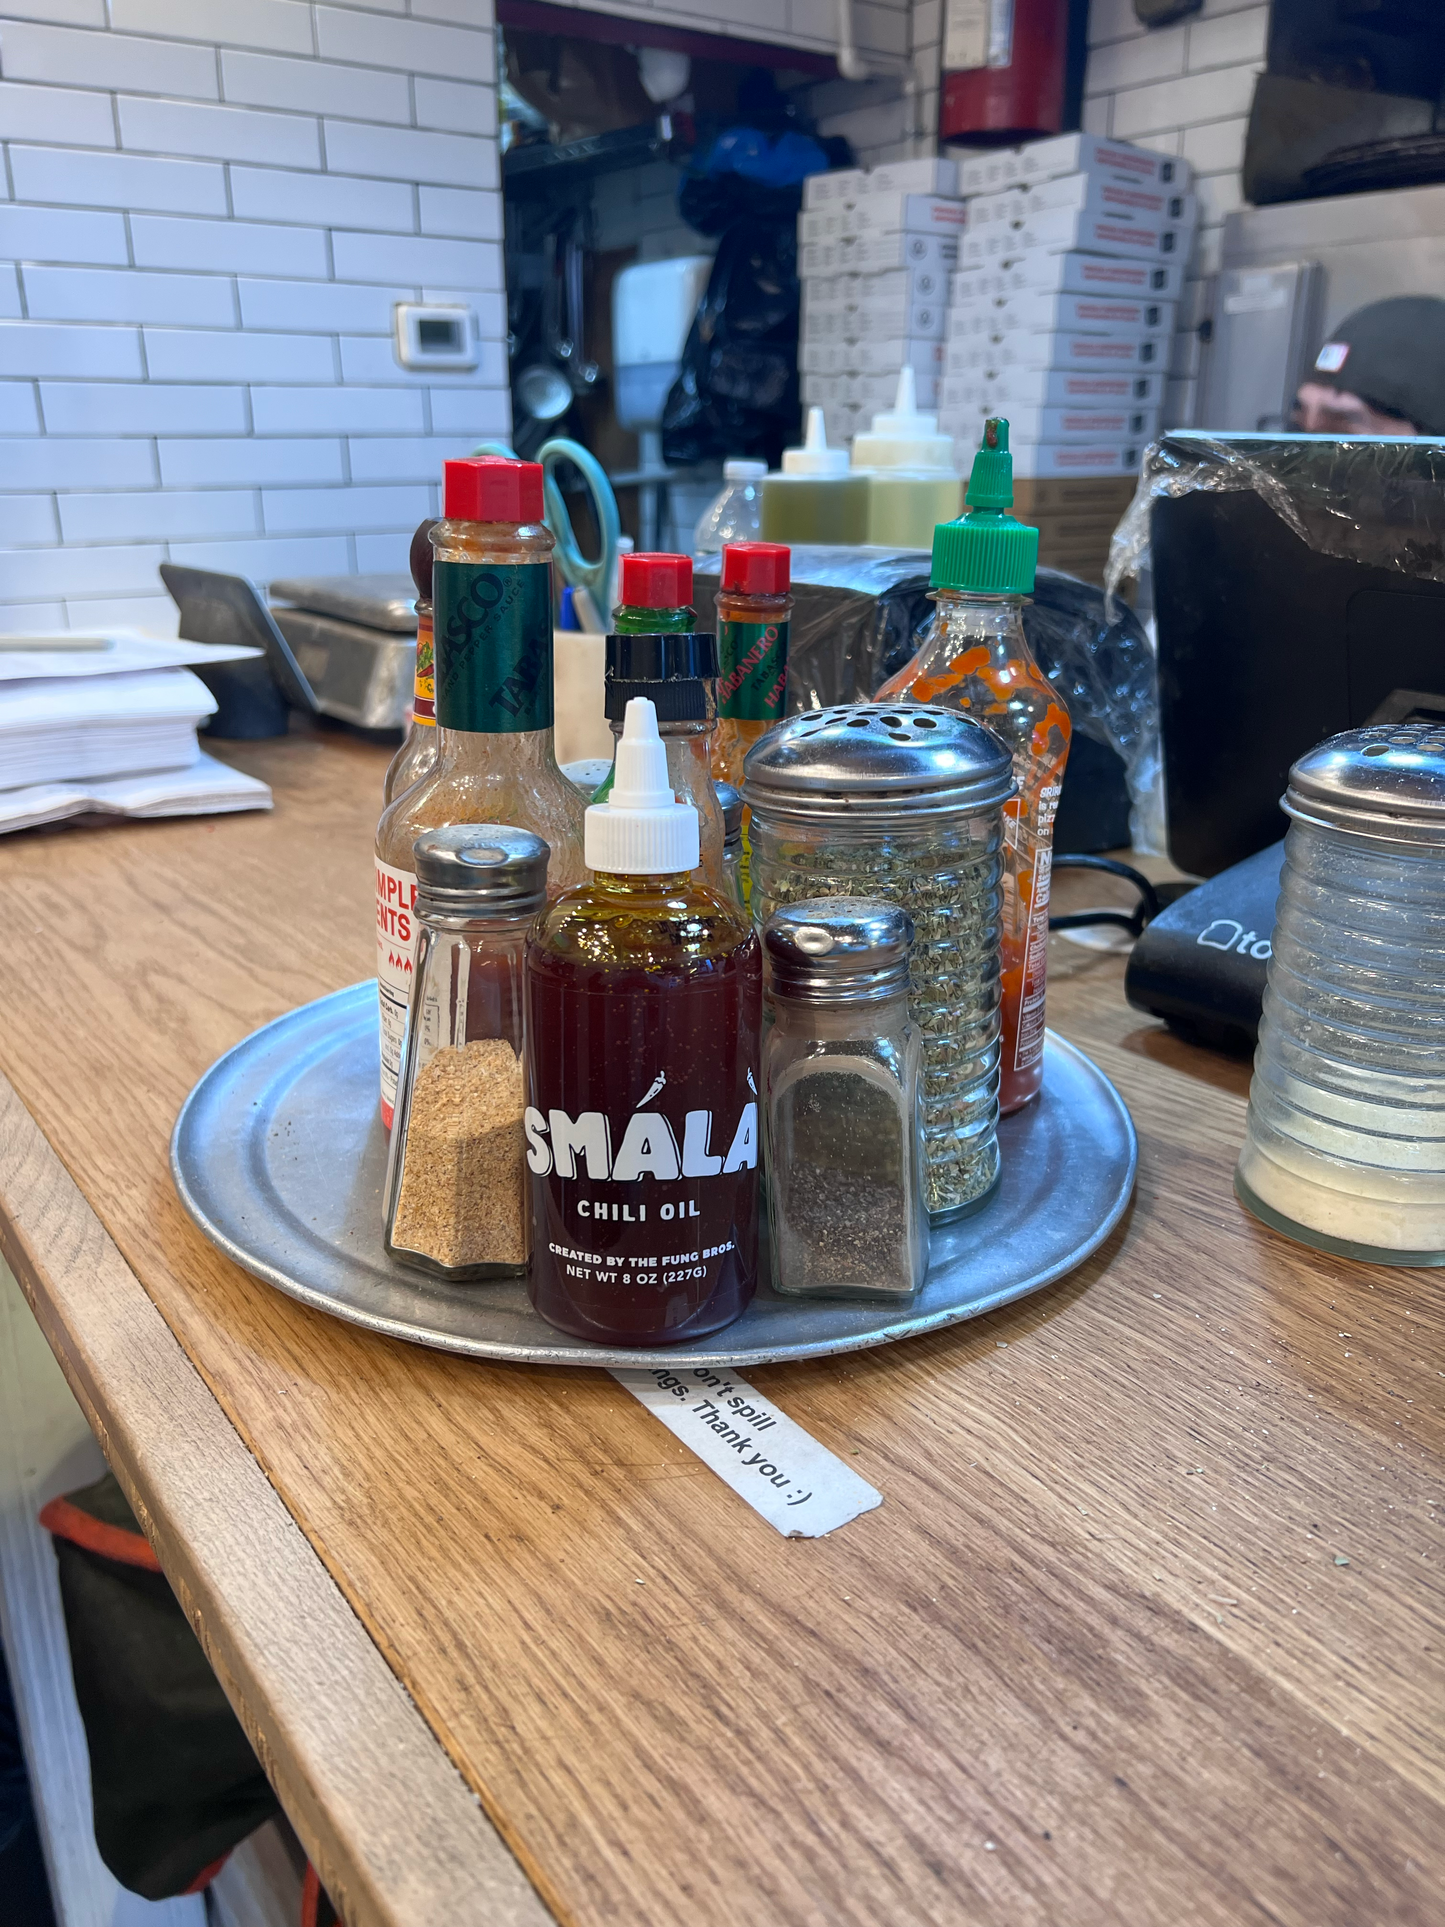 SMÁLÀ OG Chili Oil (2-Bottles)